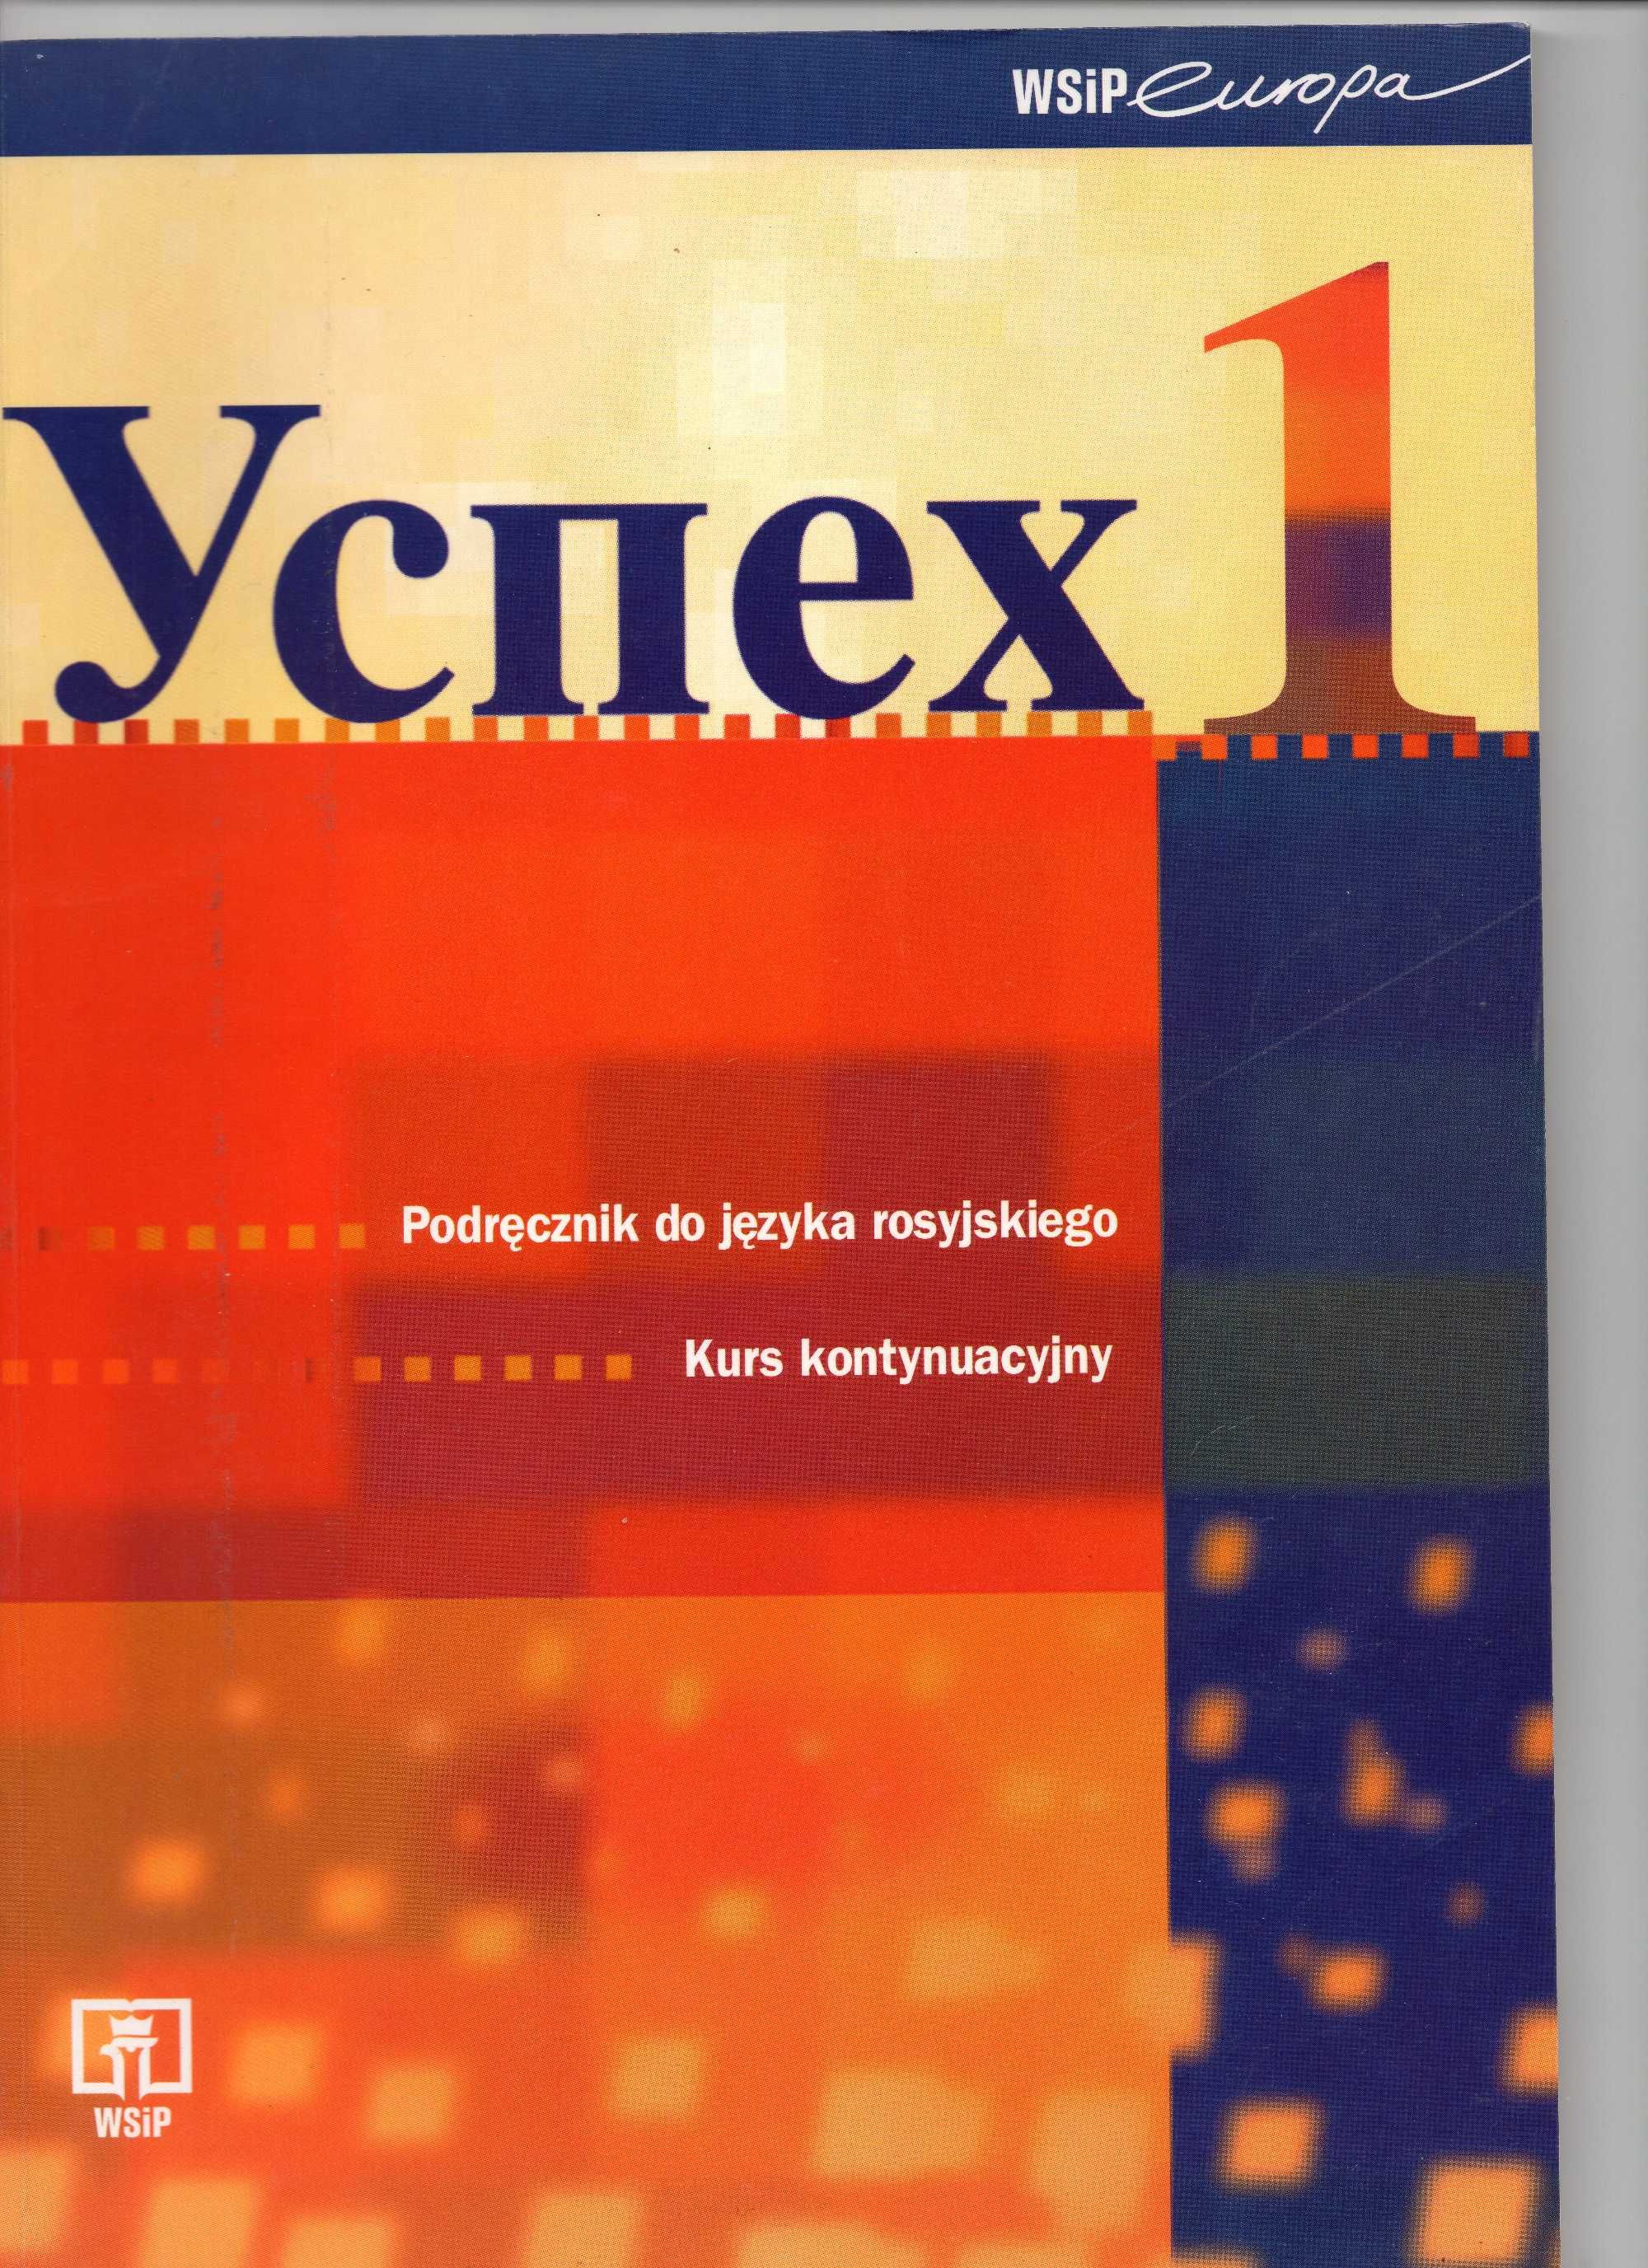 Podręcznik do nauki języka rosyjskiego - Uspiech 1, 2, 3.